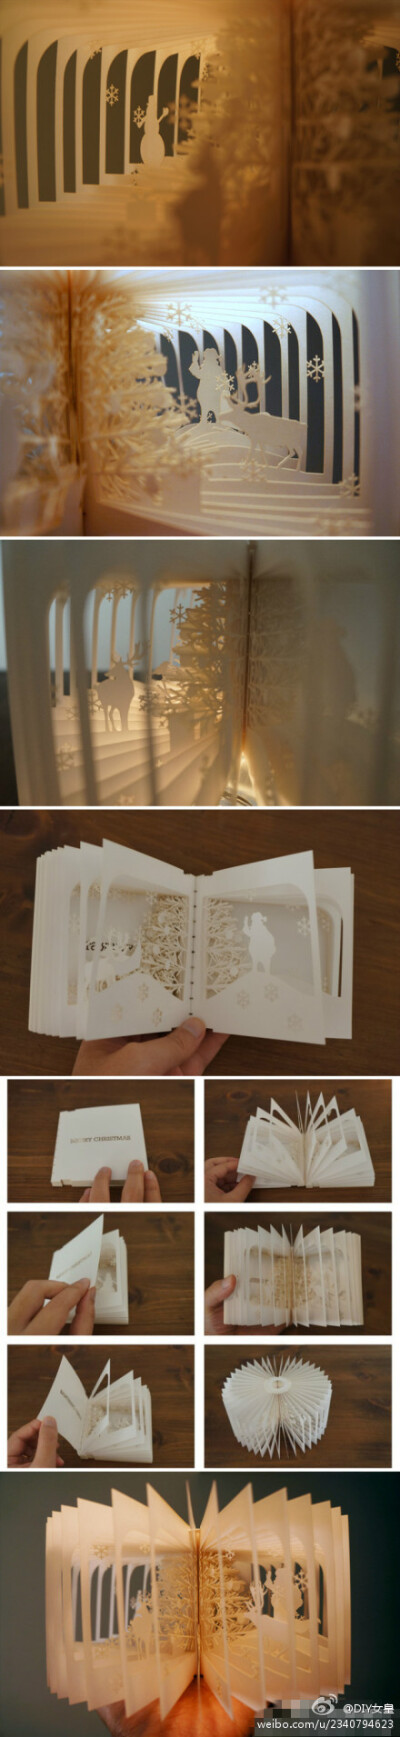 【立体圣诞贺卡】日本艺术家Yusuke Oono制作的圣诞贺卡，其实它更像是一本书，每一页都是立体雕刻的，呈现出圣诞老人、驯鹿、雪人和雪花扥诸多圣诞元素，活脱脱一个白色的童话世界。（转）更多DIY创意生活☑欢迎关注…